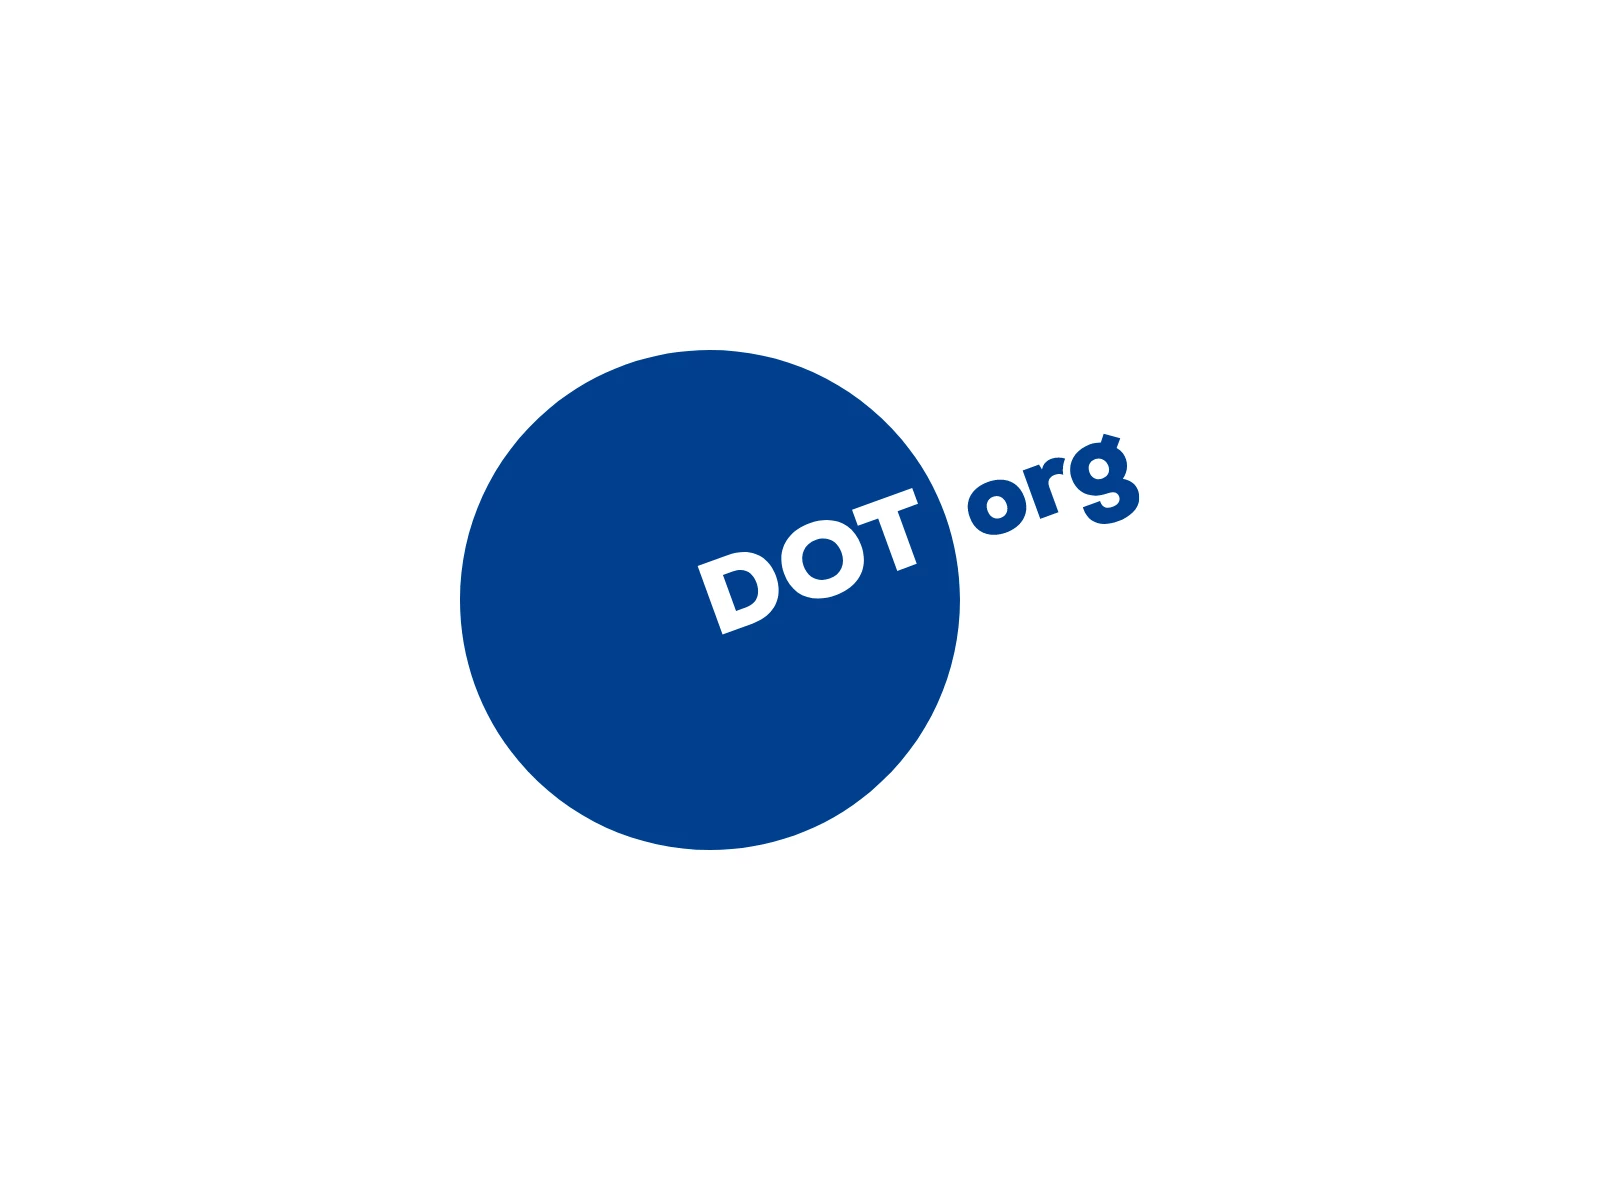 DOT org Logo Design Blue